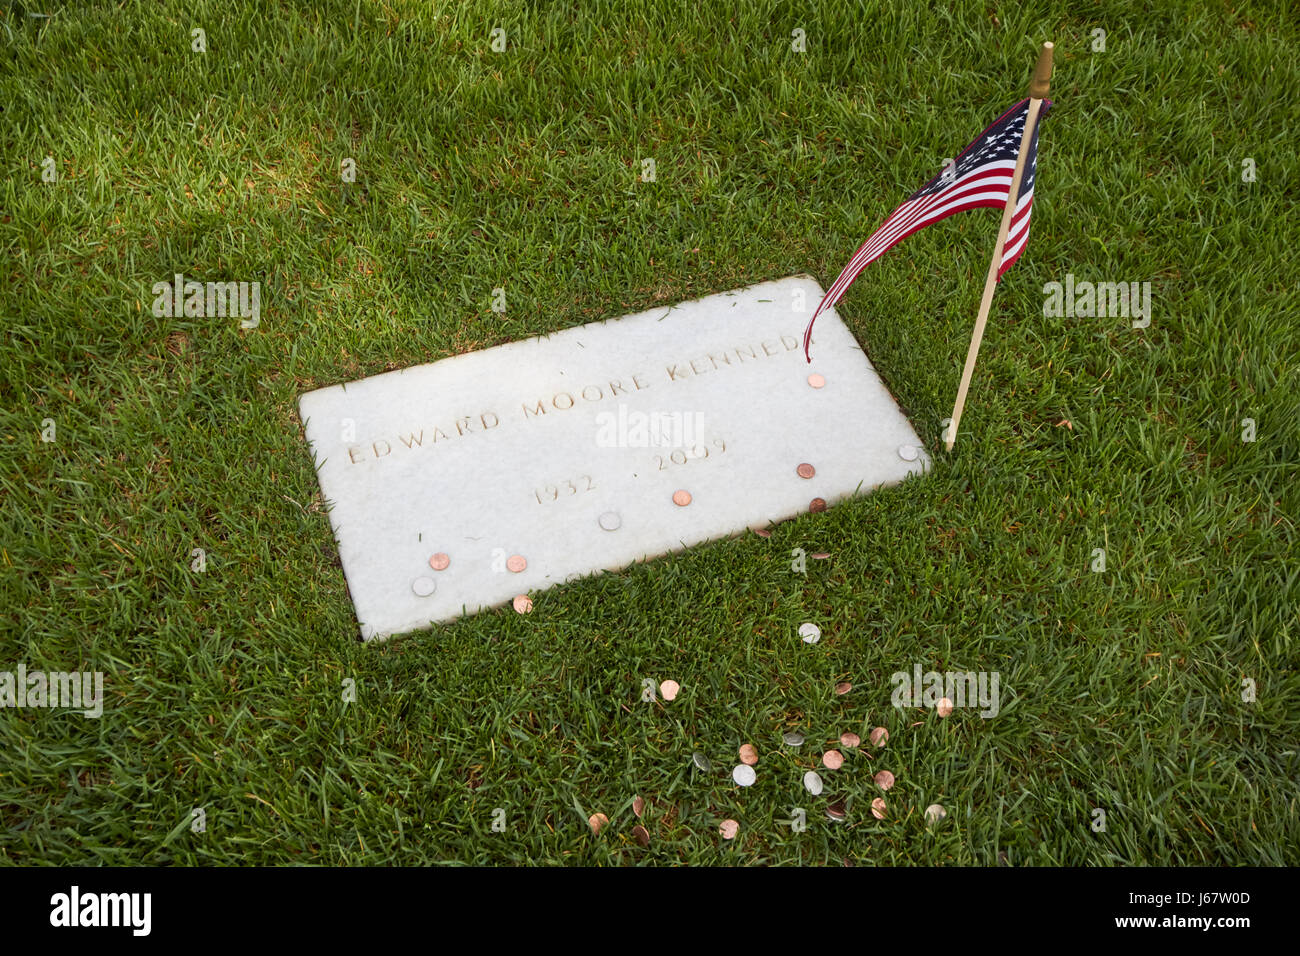 Edward moore ted Teddy Kennedy tomba con le monete il Cimitero di Arlington Washington DC USA Foto Stock